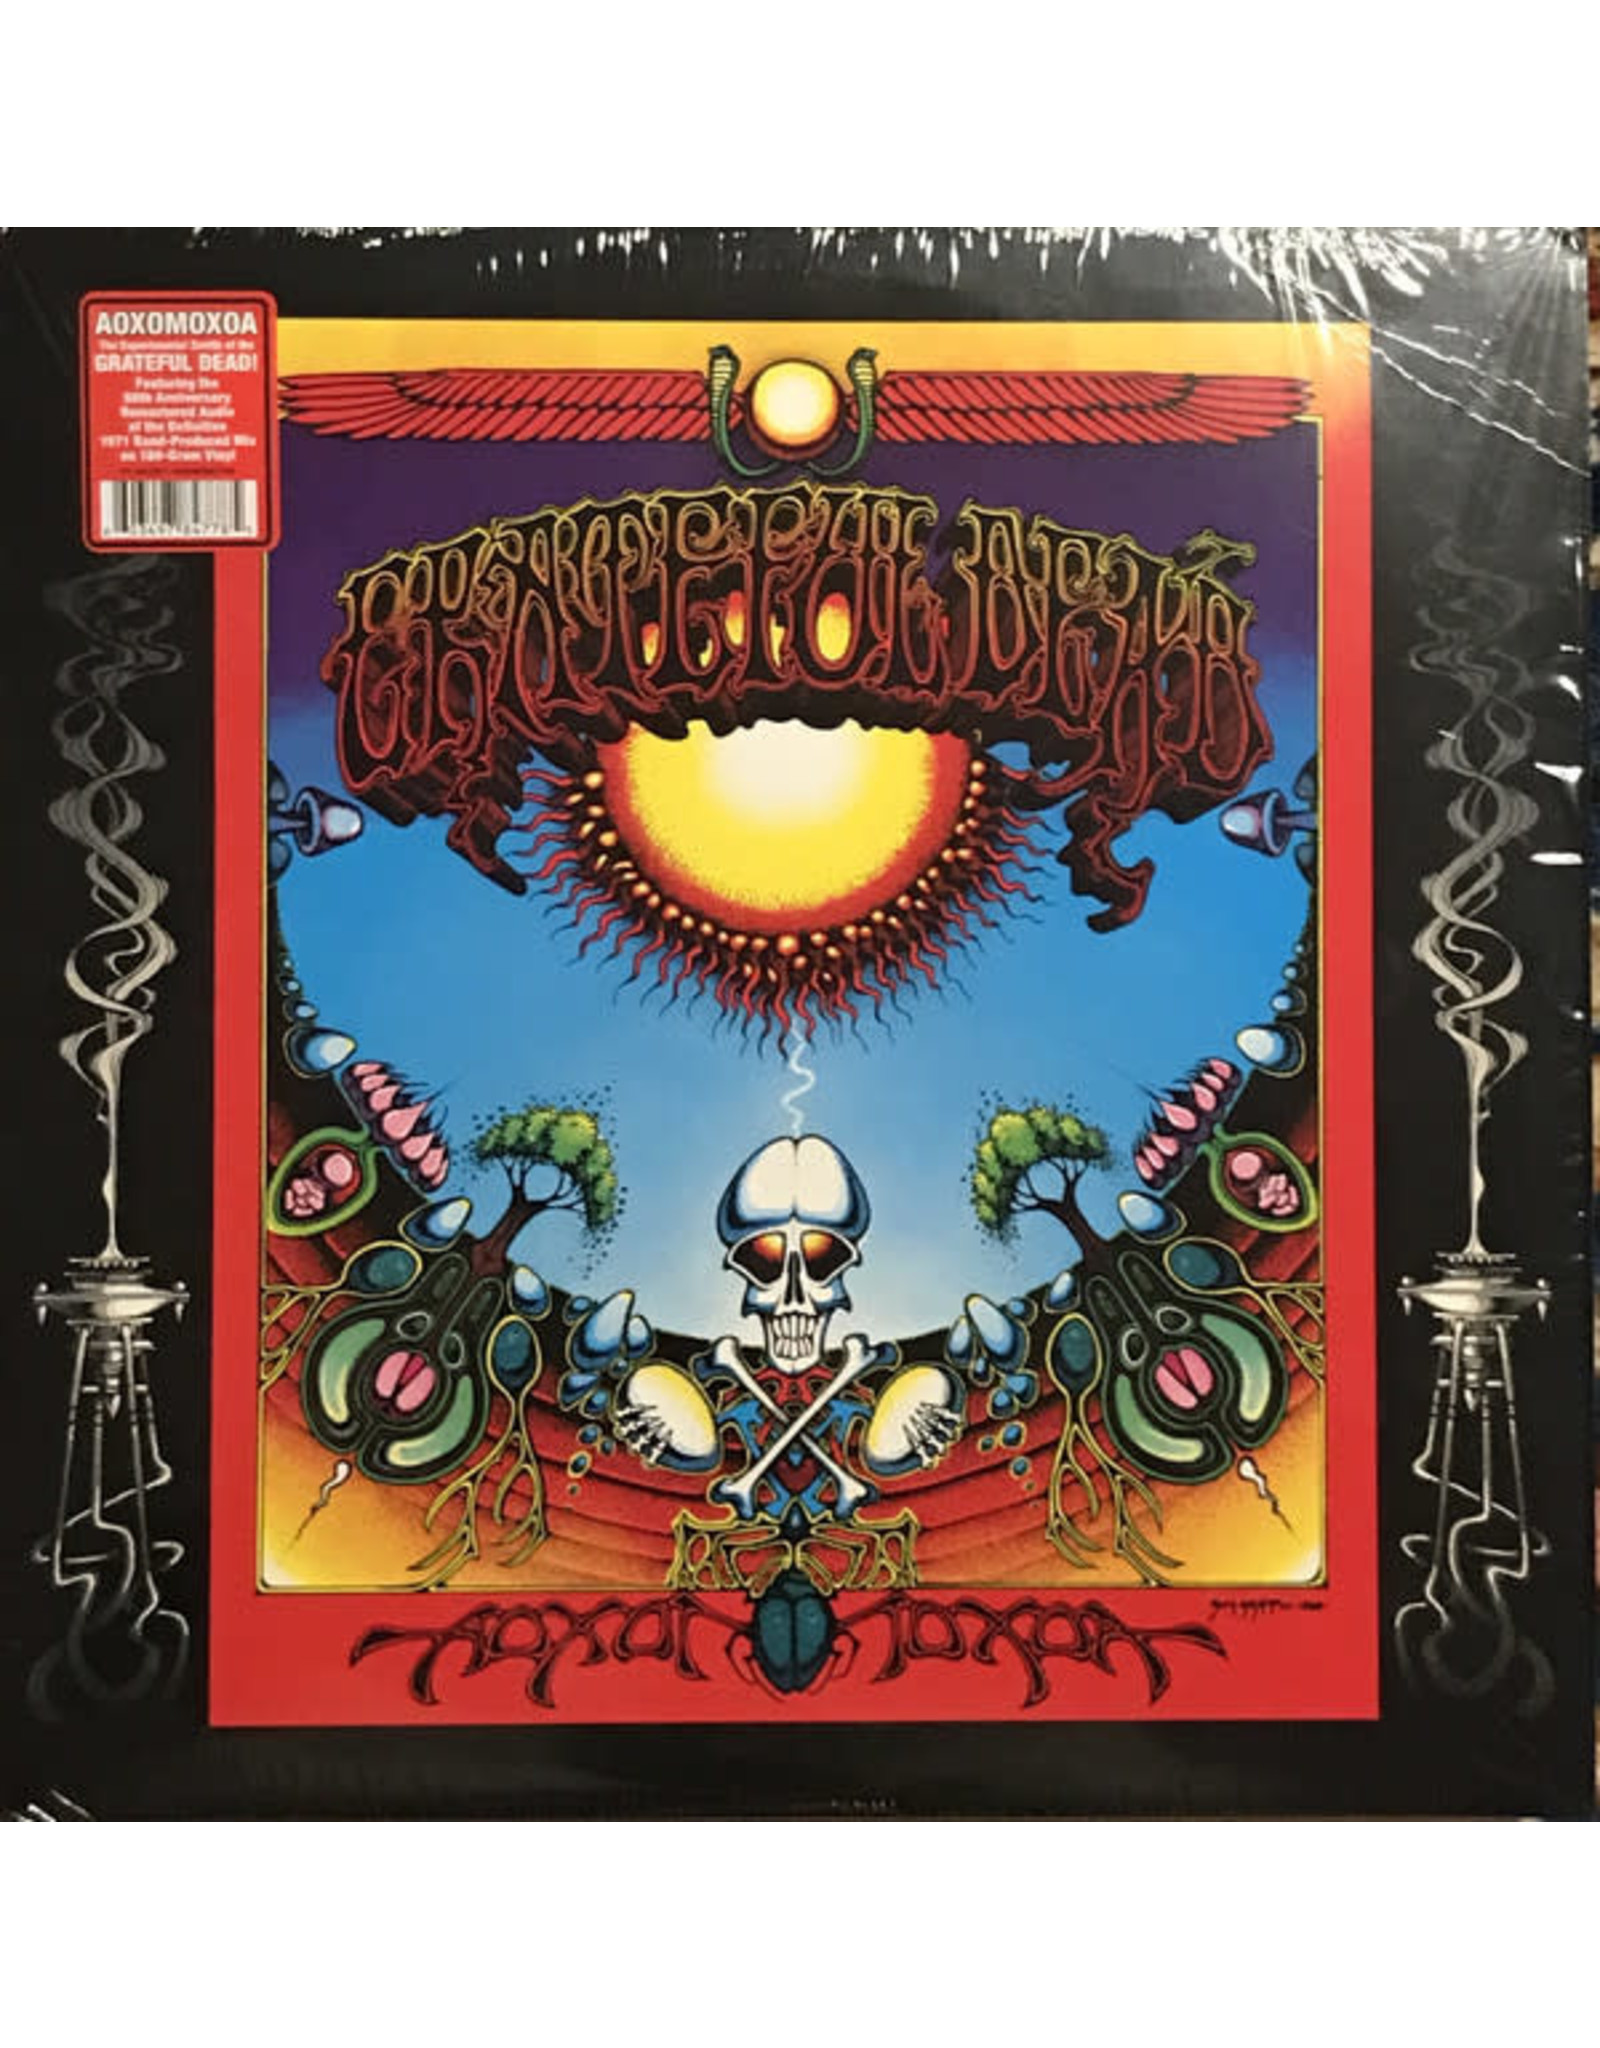 Grateful Dead - Aoxomoxoa 50th Anniv LP